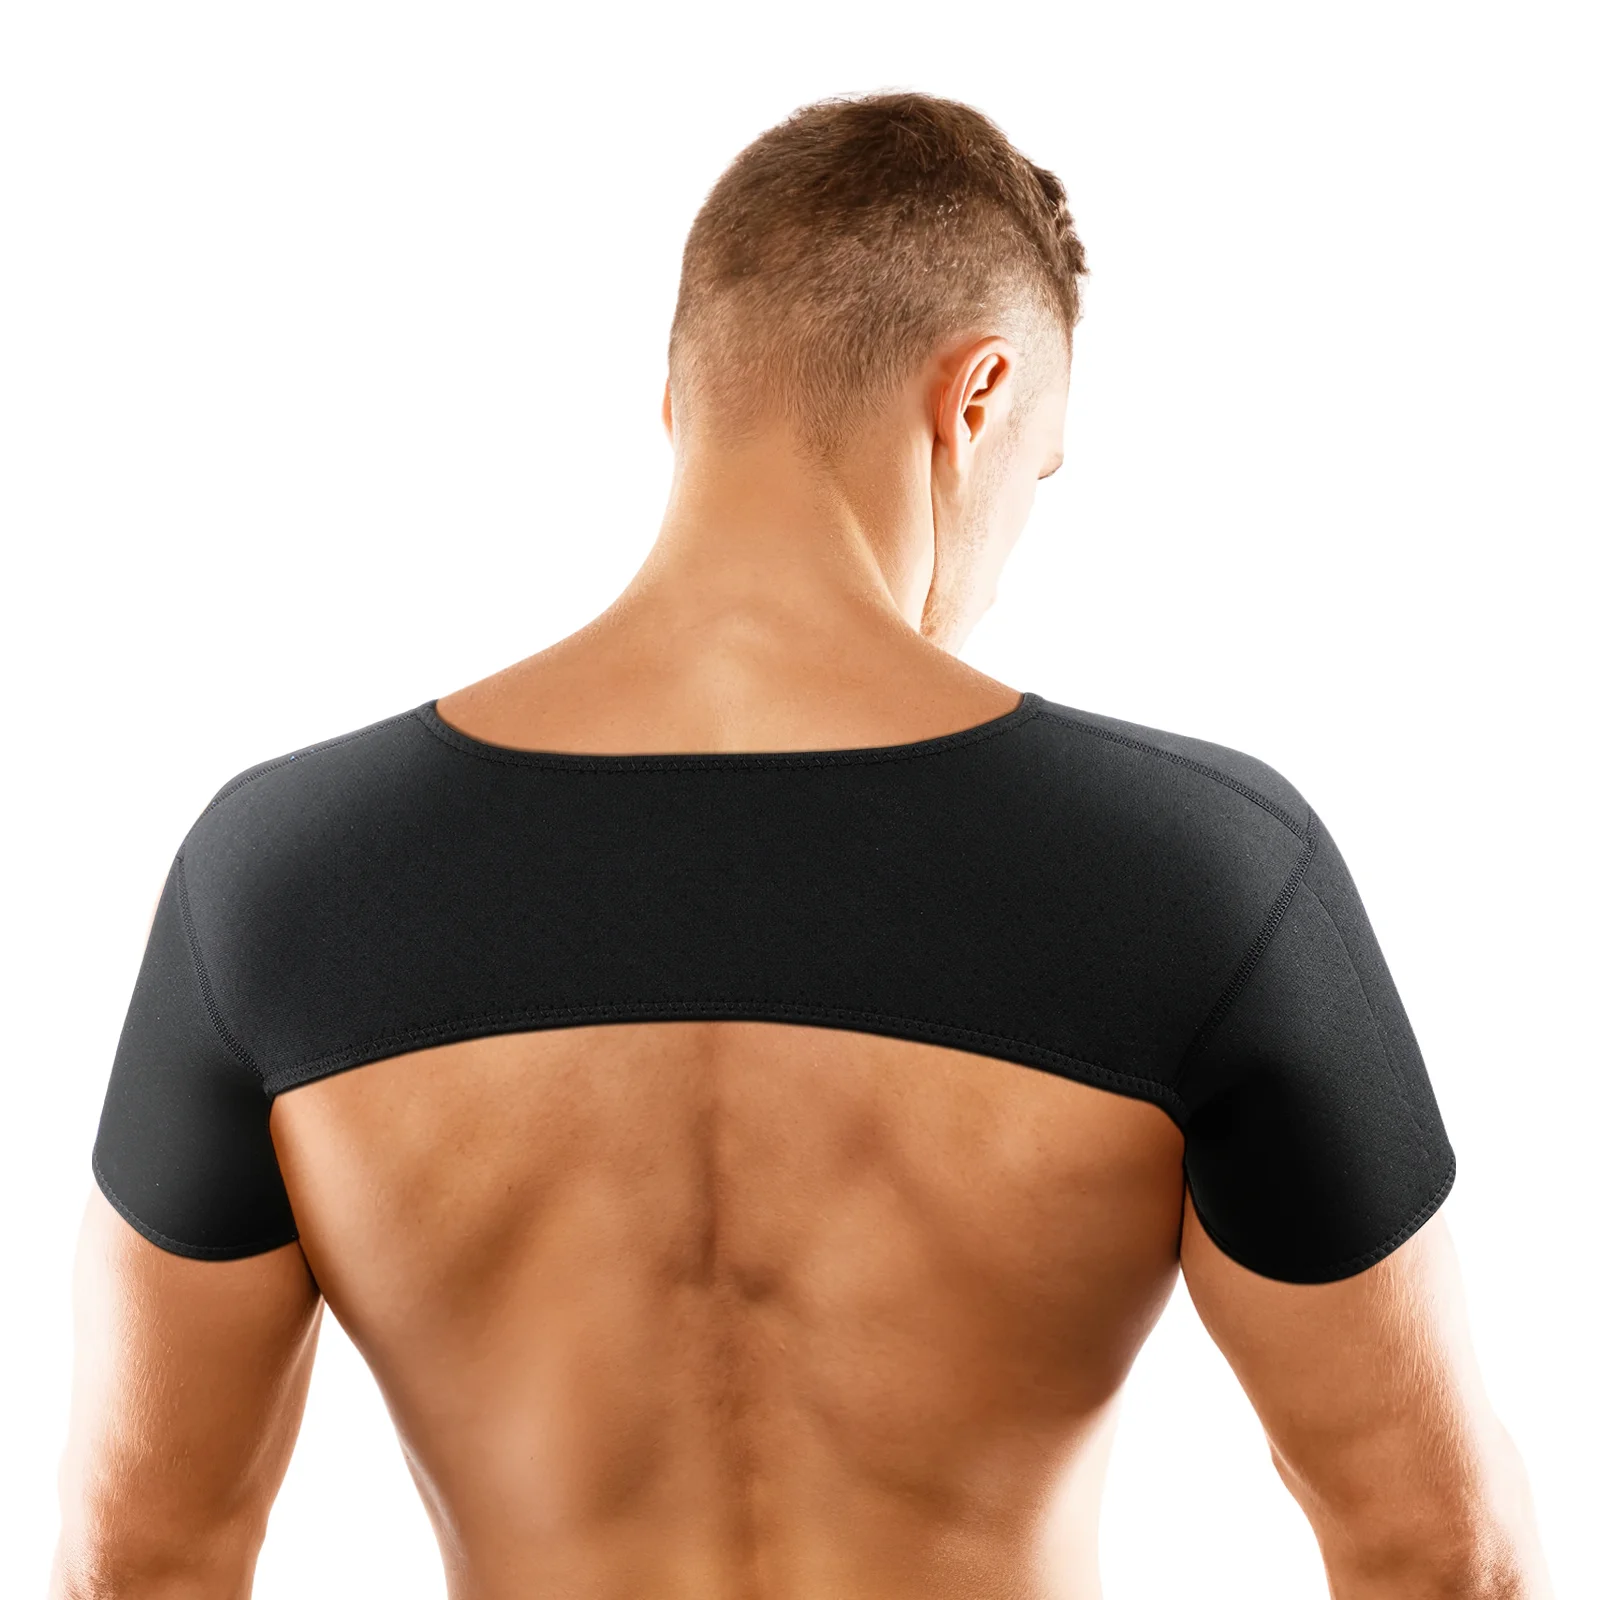 

Shoulder Pads Camisas Compresion Para Hombre Basketball Brace Sleeve Compression Sports Man Shirts Men Shoulder Support Sleeve